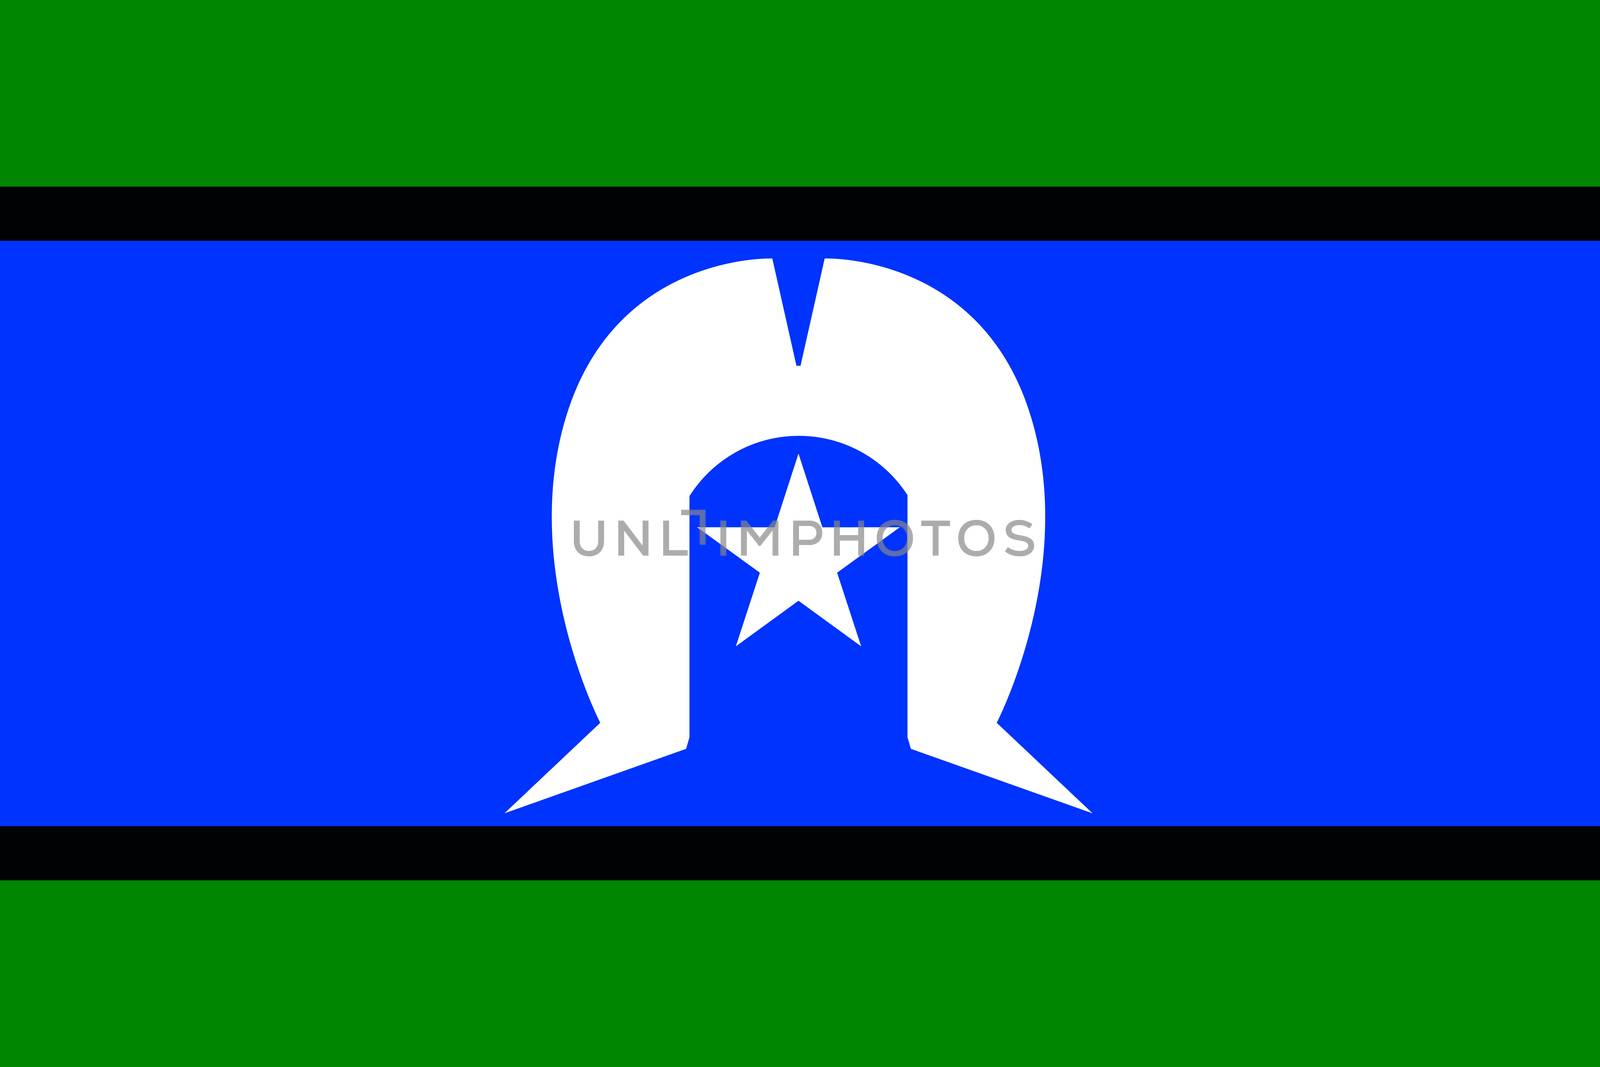 The flag of the Australian Torres Strait Islander